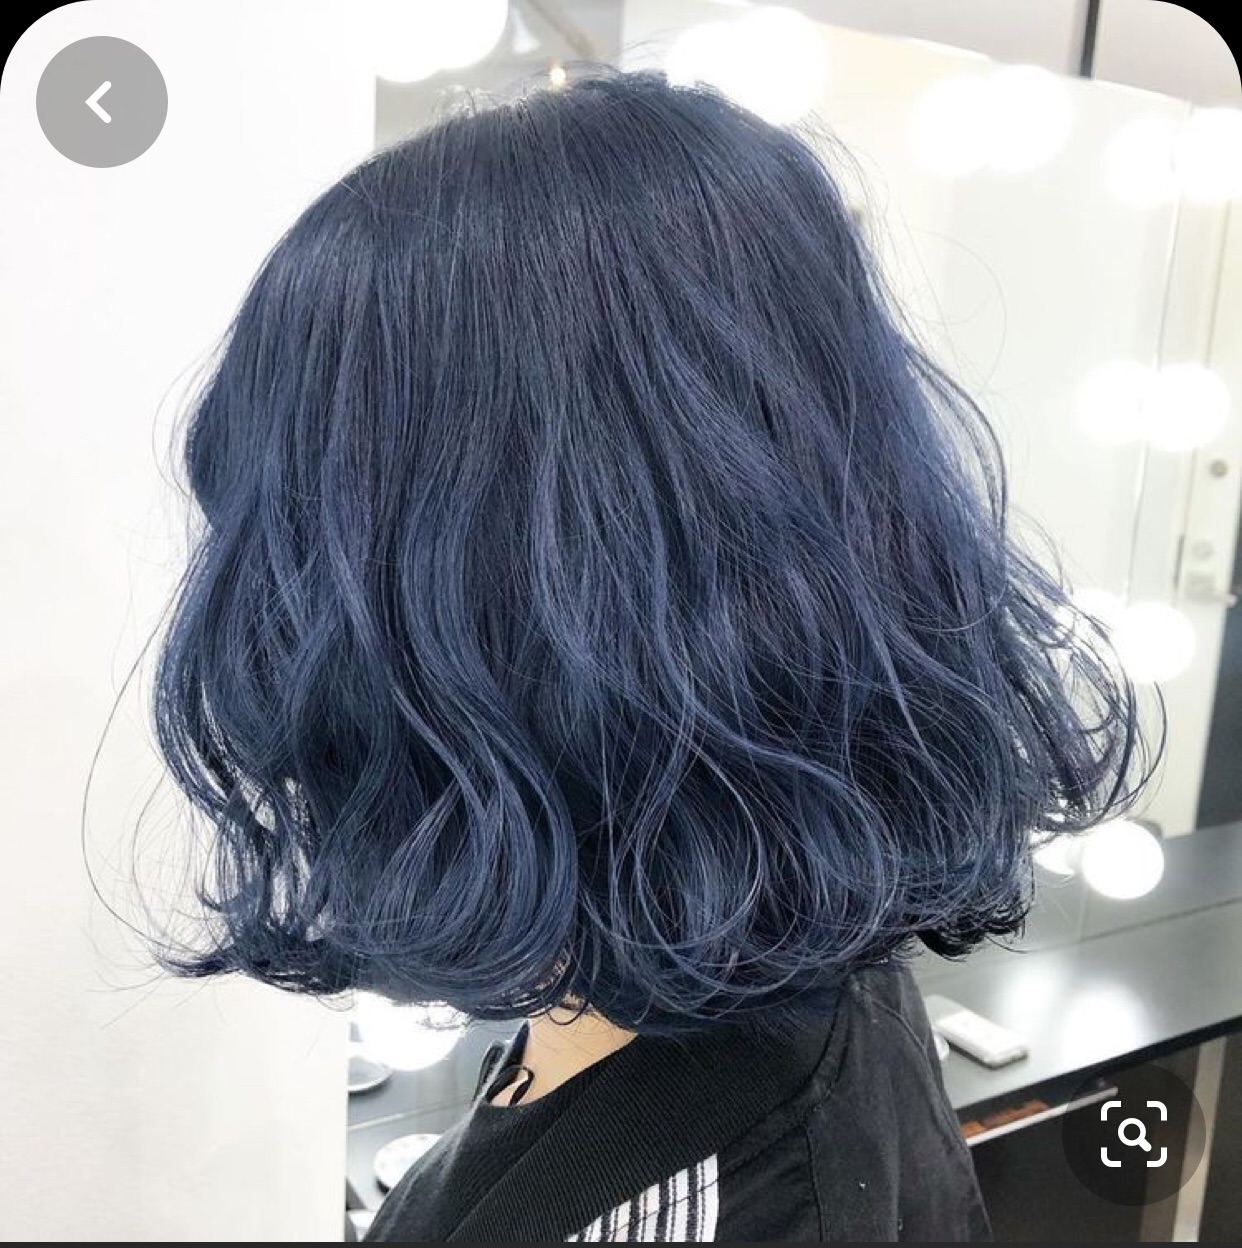 Màu than chì ánh xanh blue không cần tẩy tóc nha chị em Nếu chị em không  mong muốn tẩy tóc và nhuộm màu quá sáng thì đây là một gợi ý